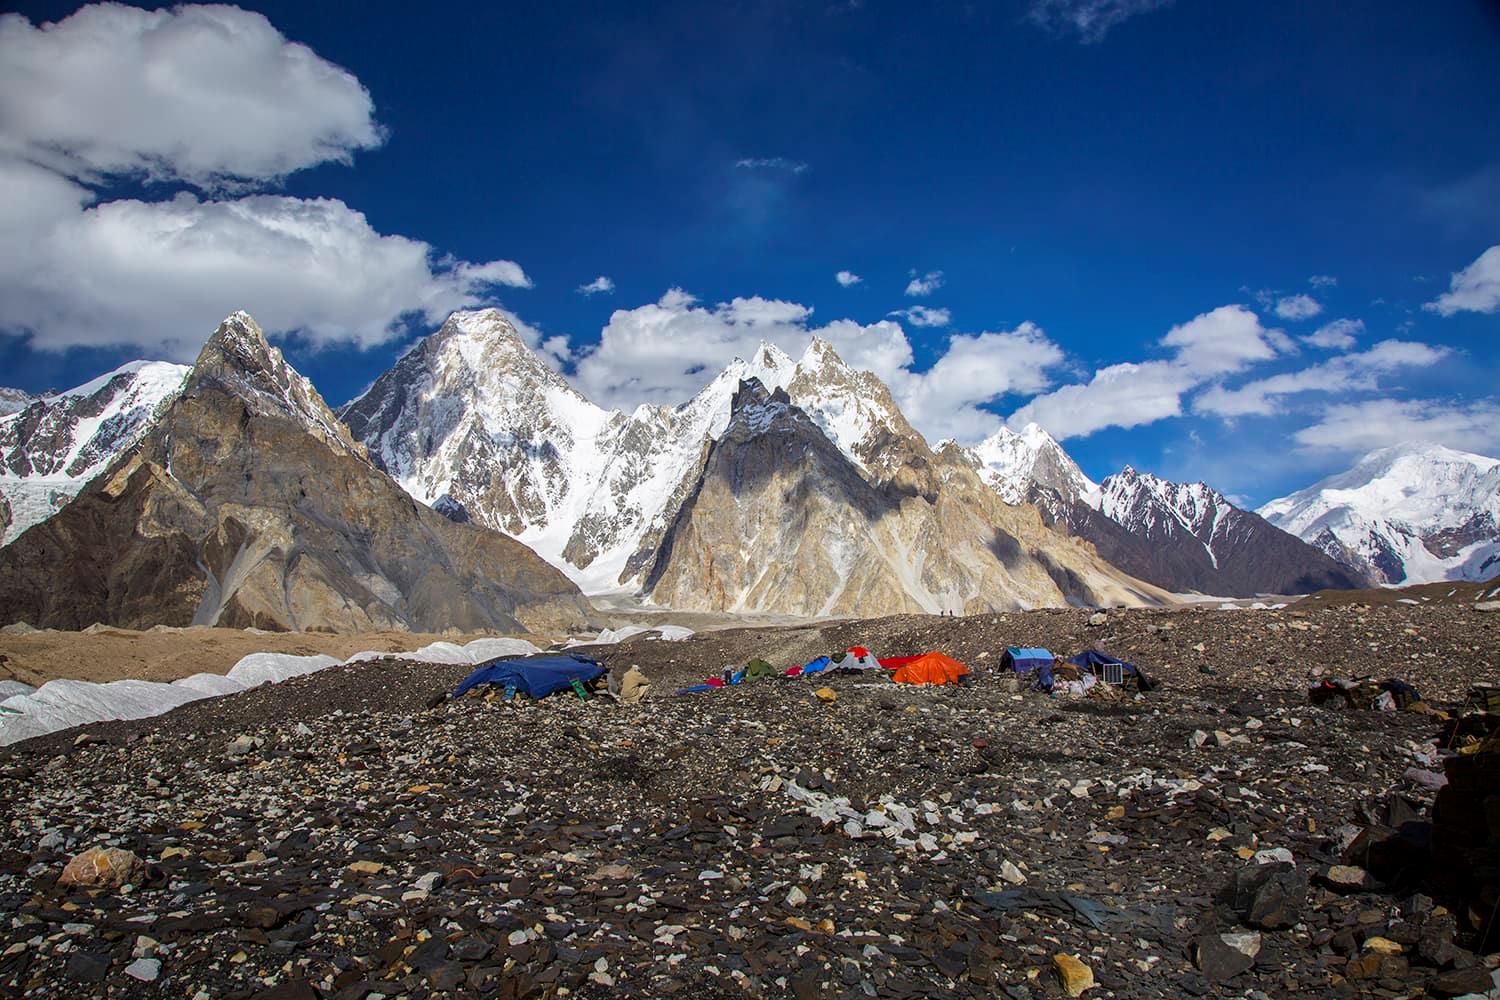 K2 Base Camp Trek